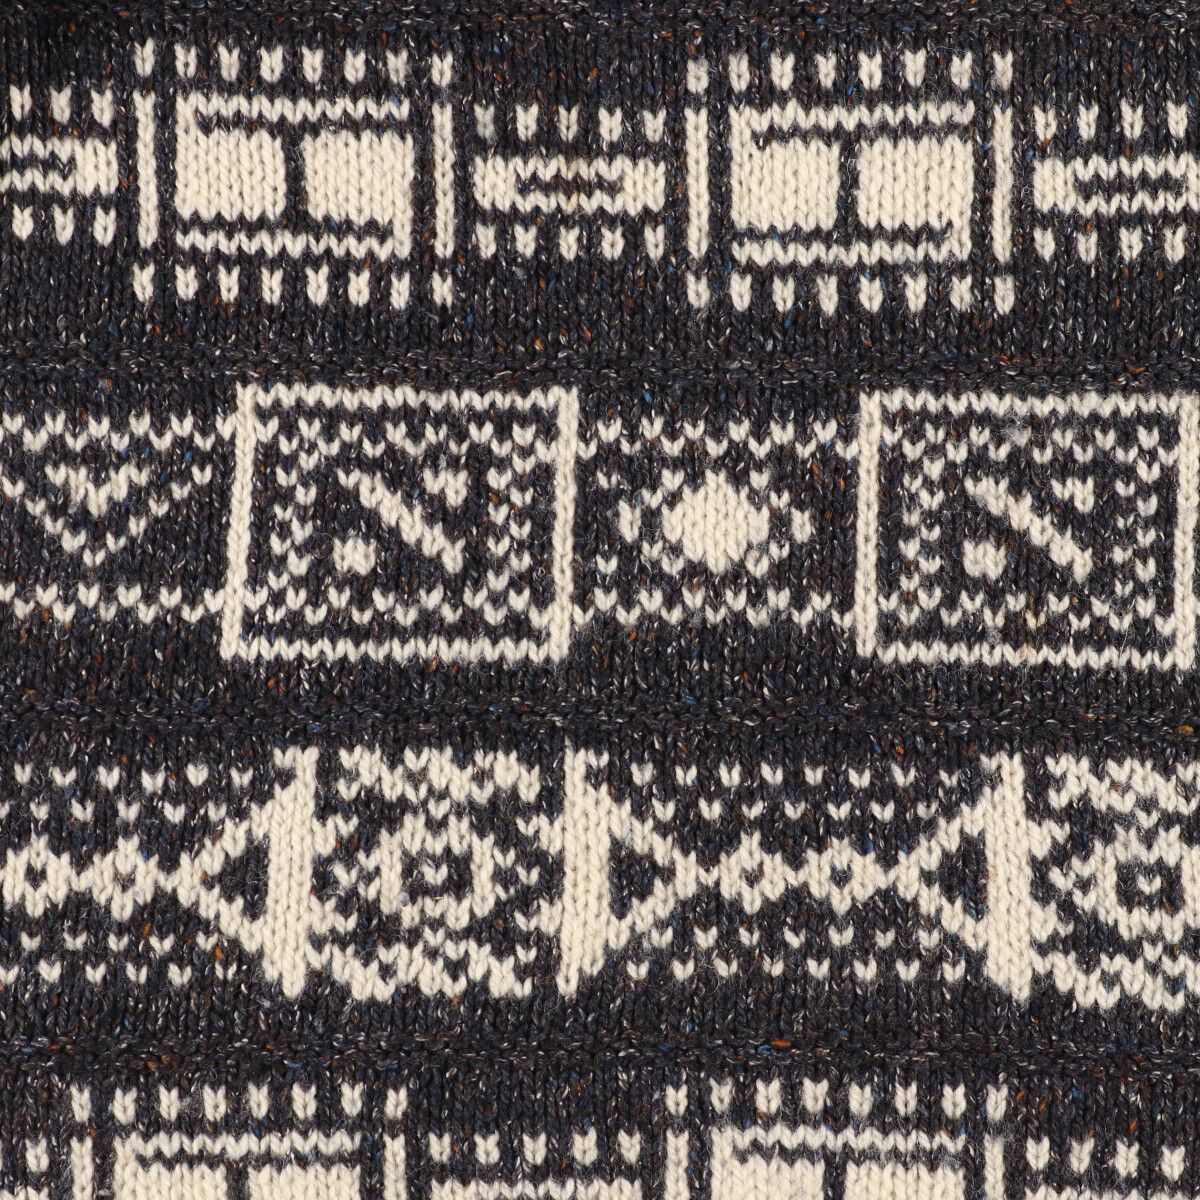  б/у одежда FISHERMAN общий рисунок шерсть вязаный свитер мужской XXL /eaa353993 [SS2403]